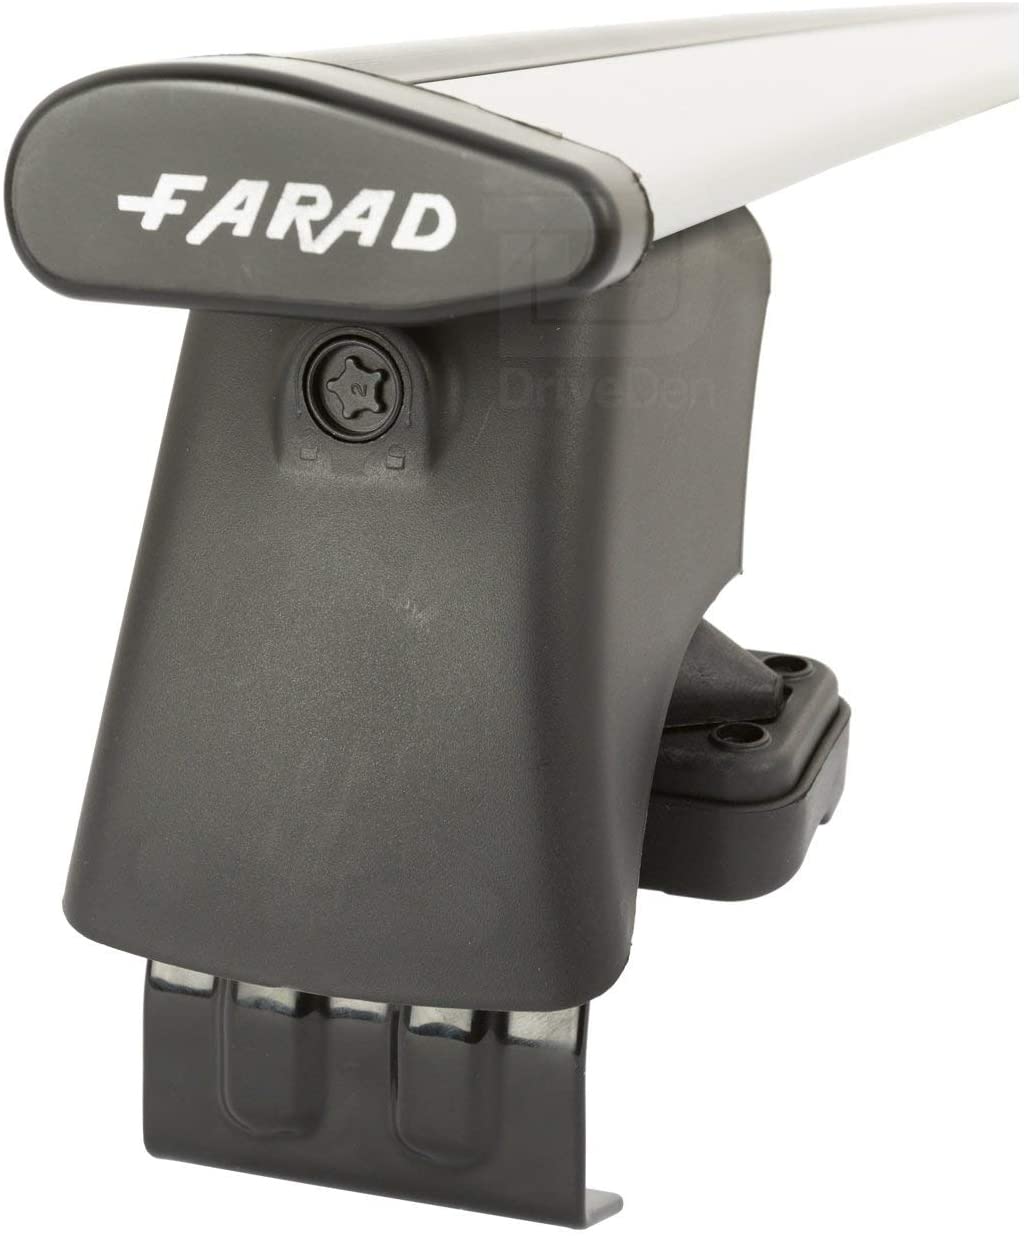 FARAD-Kit H2 per barre portatutto - Fiat Grande Punto 2005-2012 (senza corrimano)